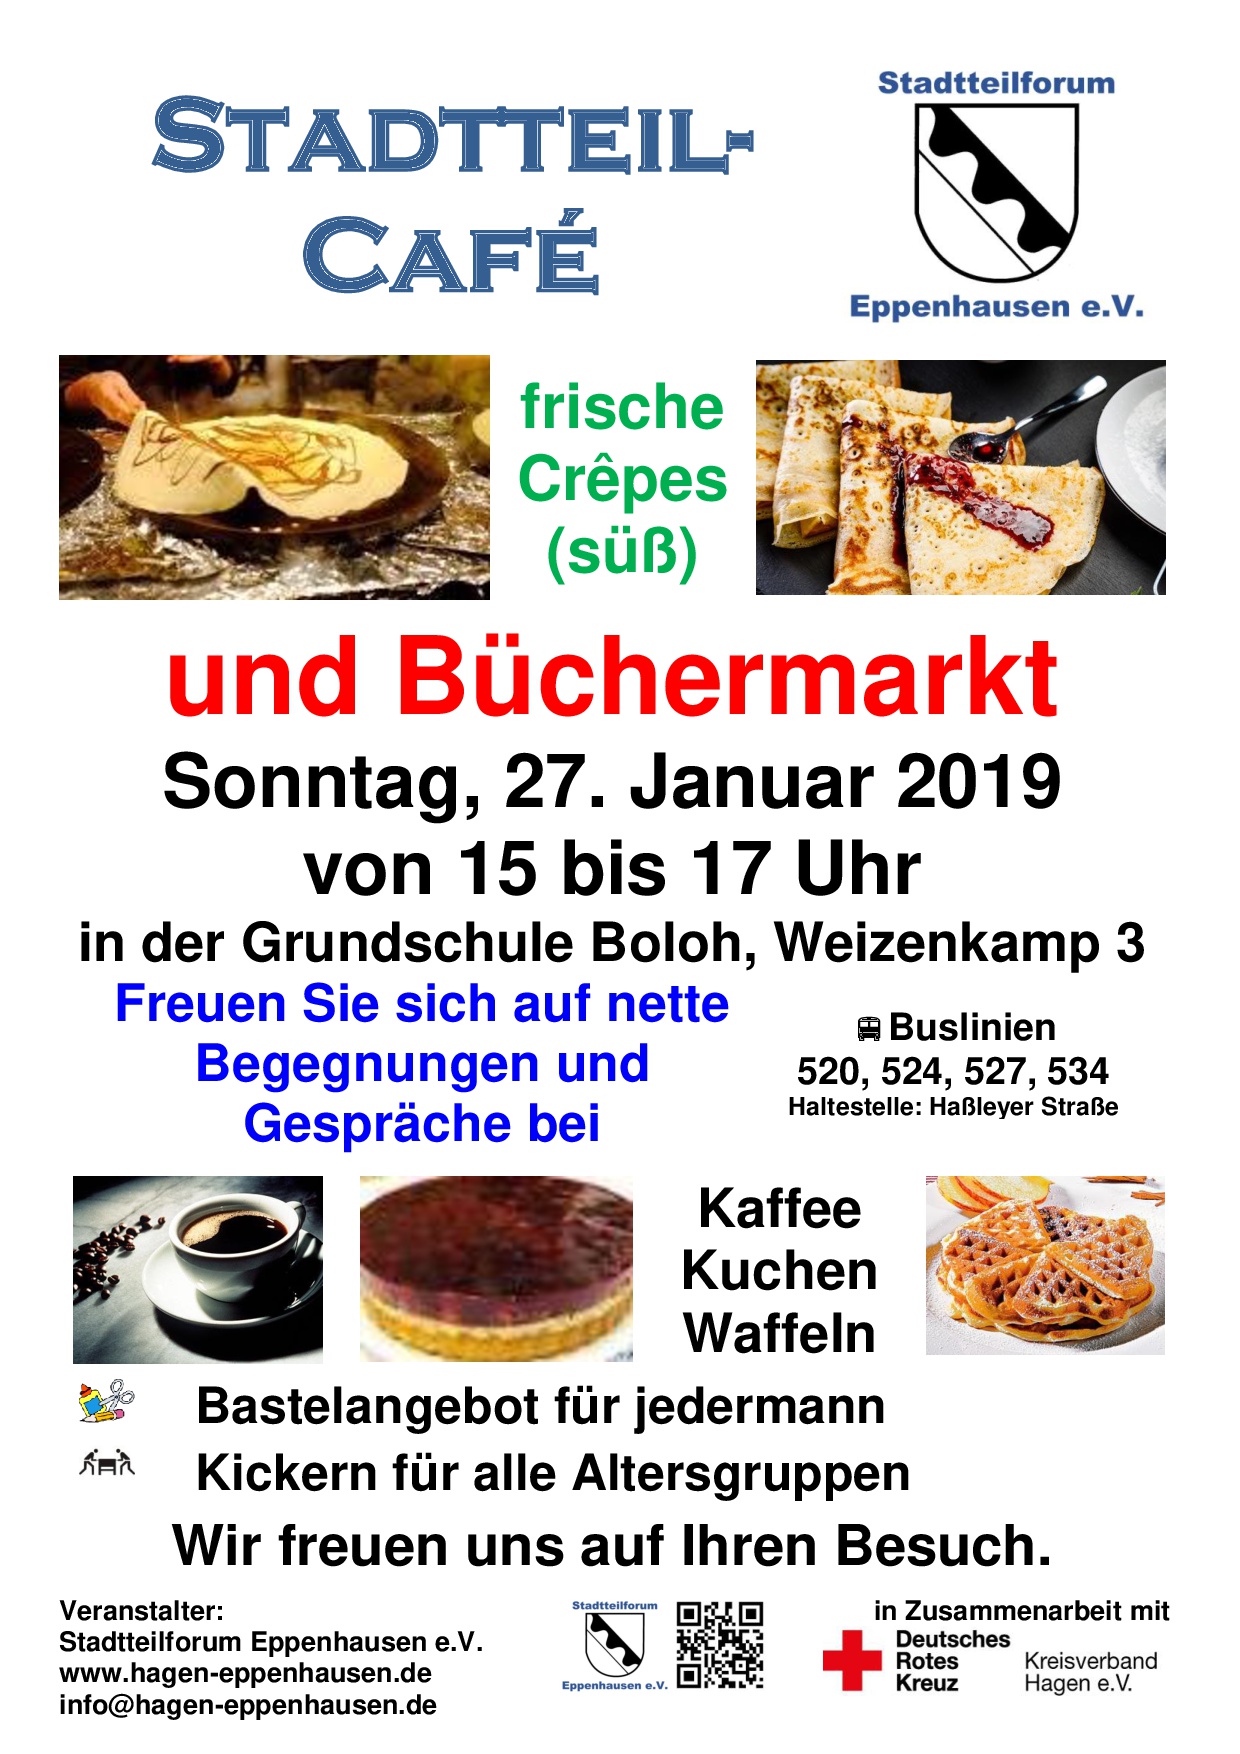 Stadtteil-Café in Eppenhausen - Frische Crêpes und Büchermarkt für die ganze Familie